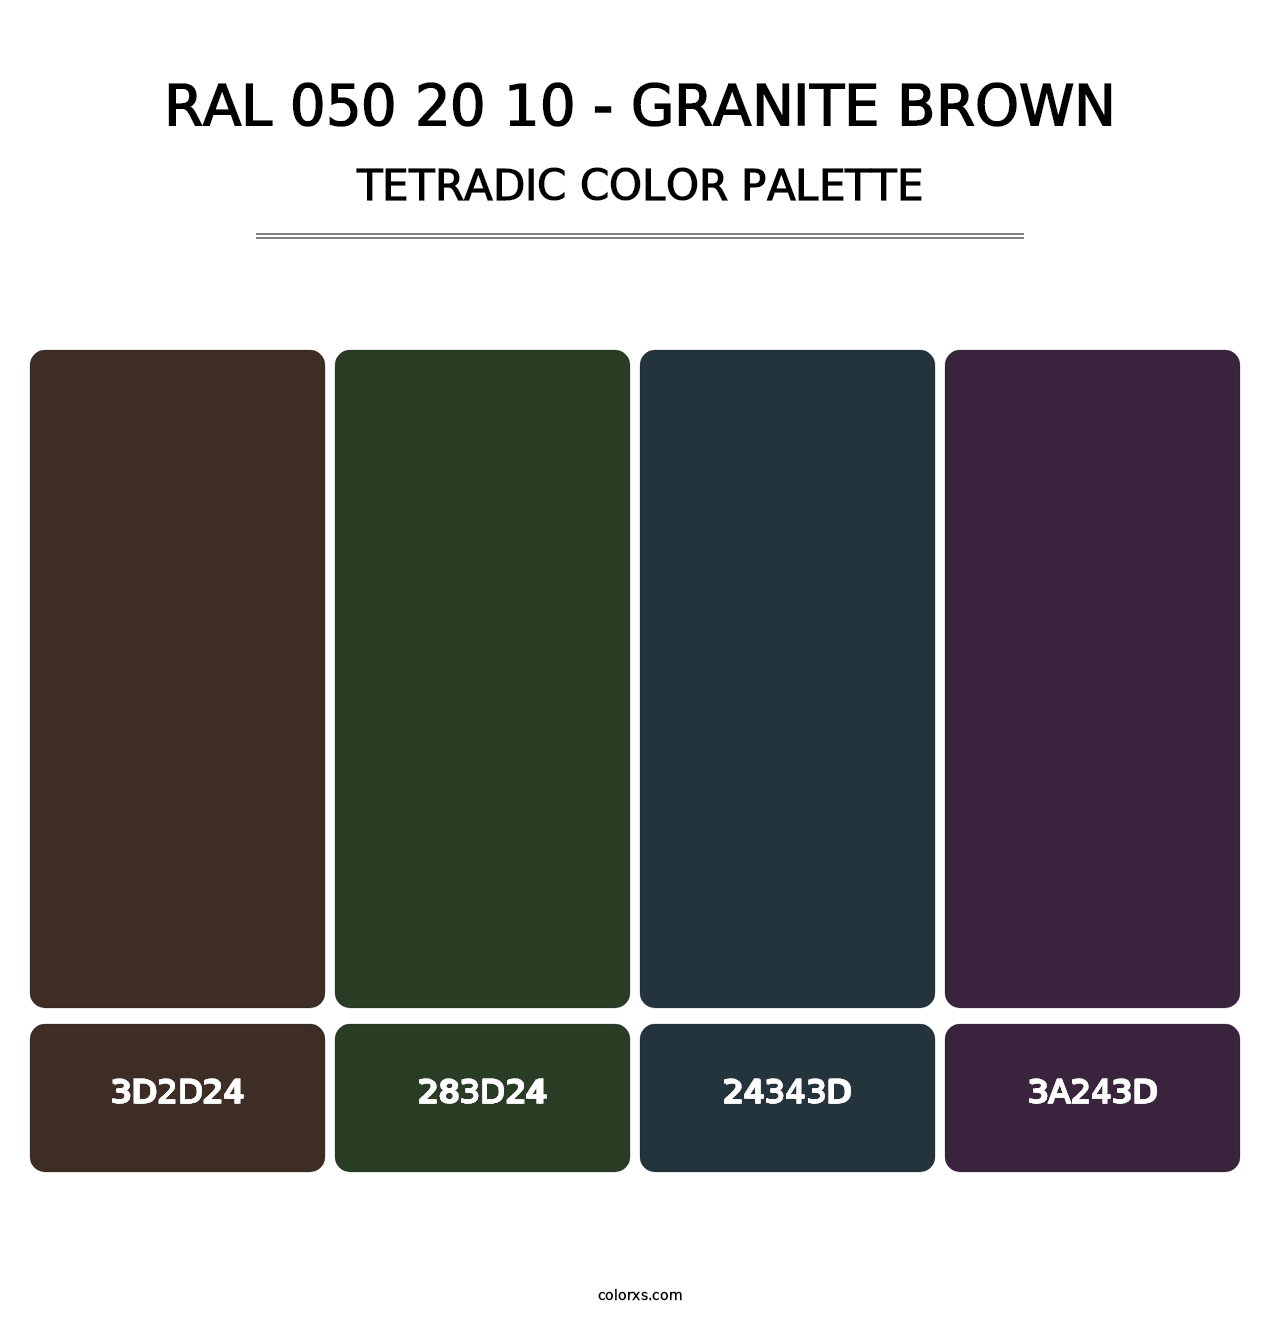 RAL 050 20 10 - Granite Brown - Tetradic Color Palette